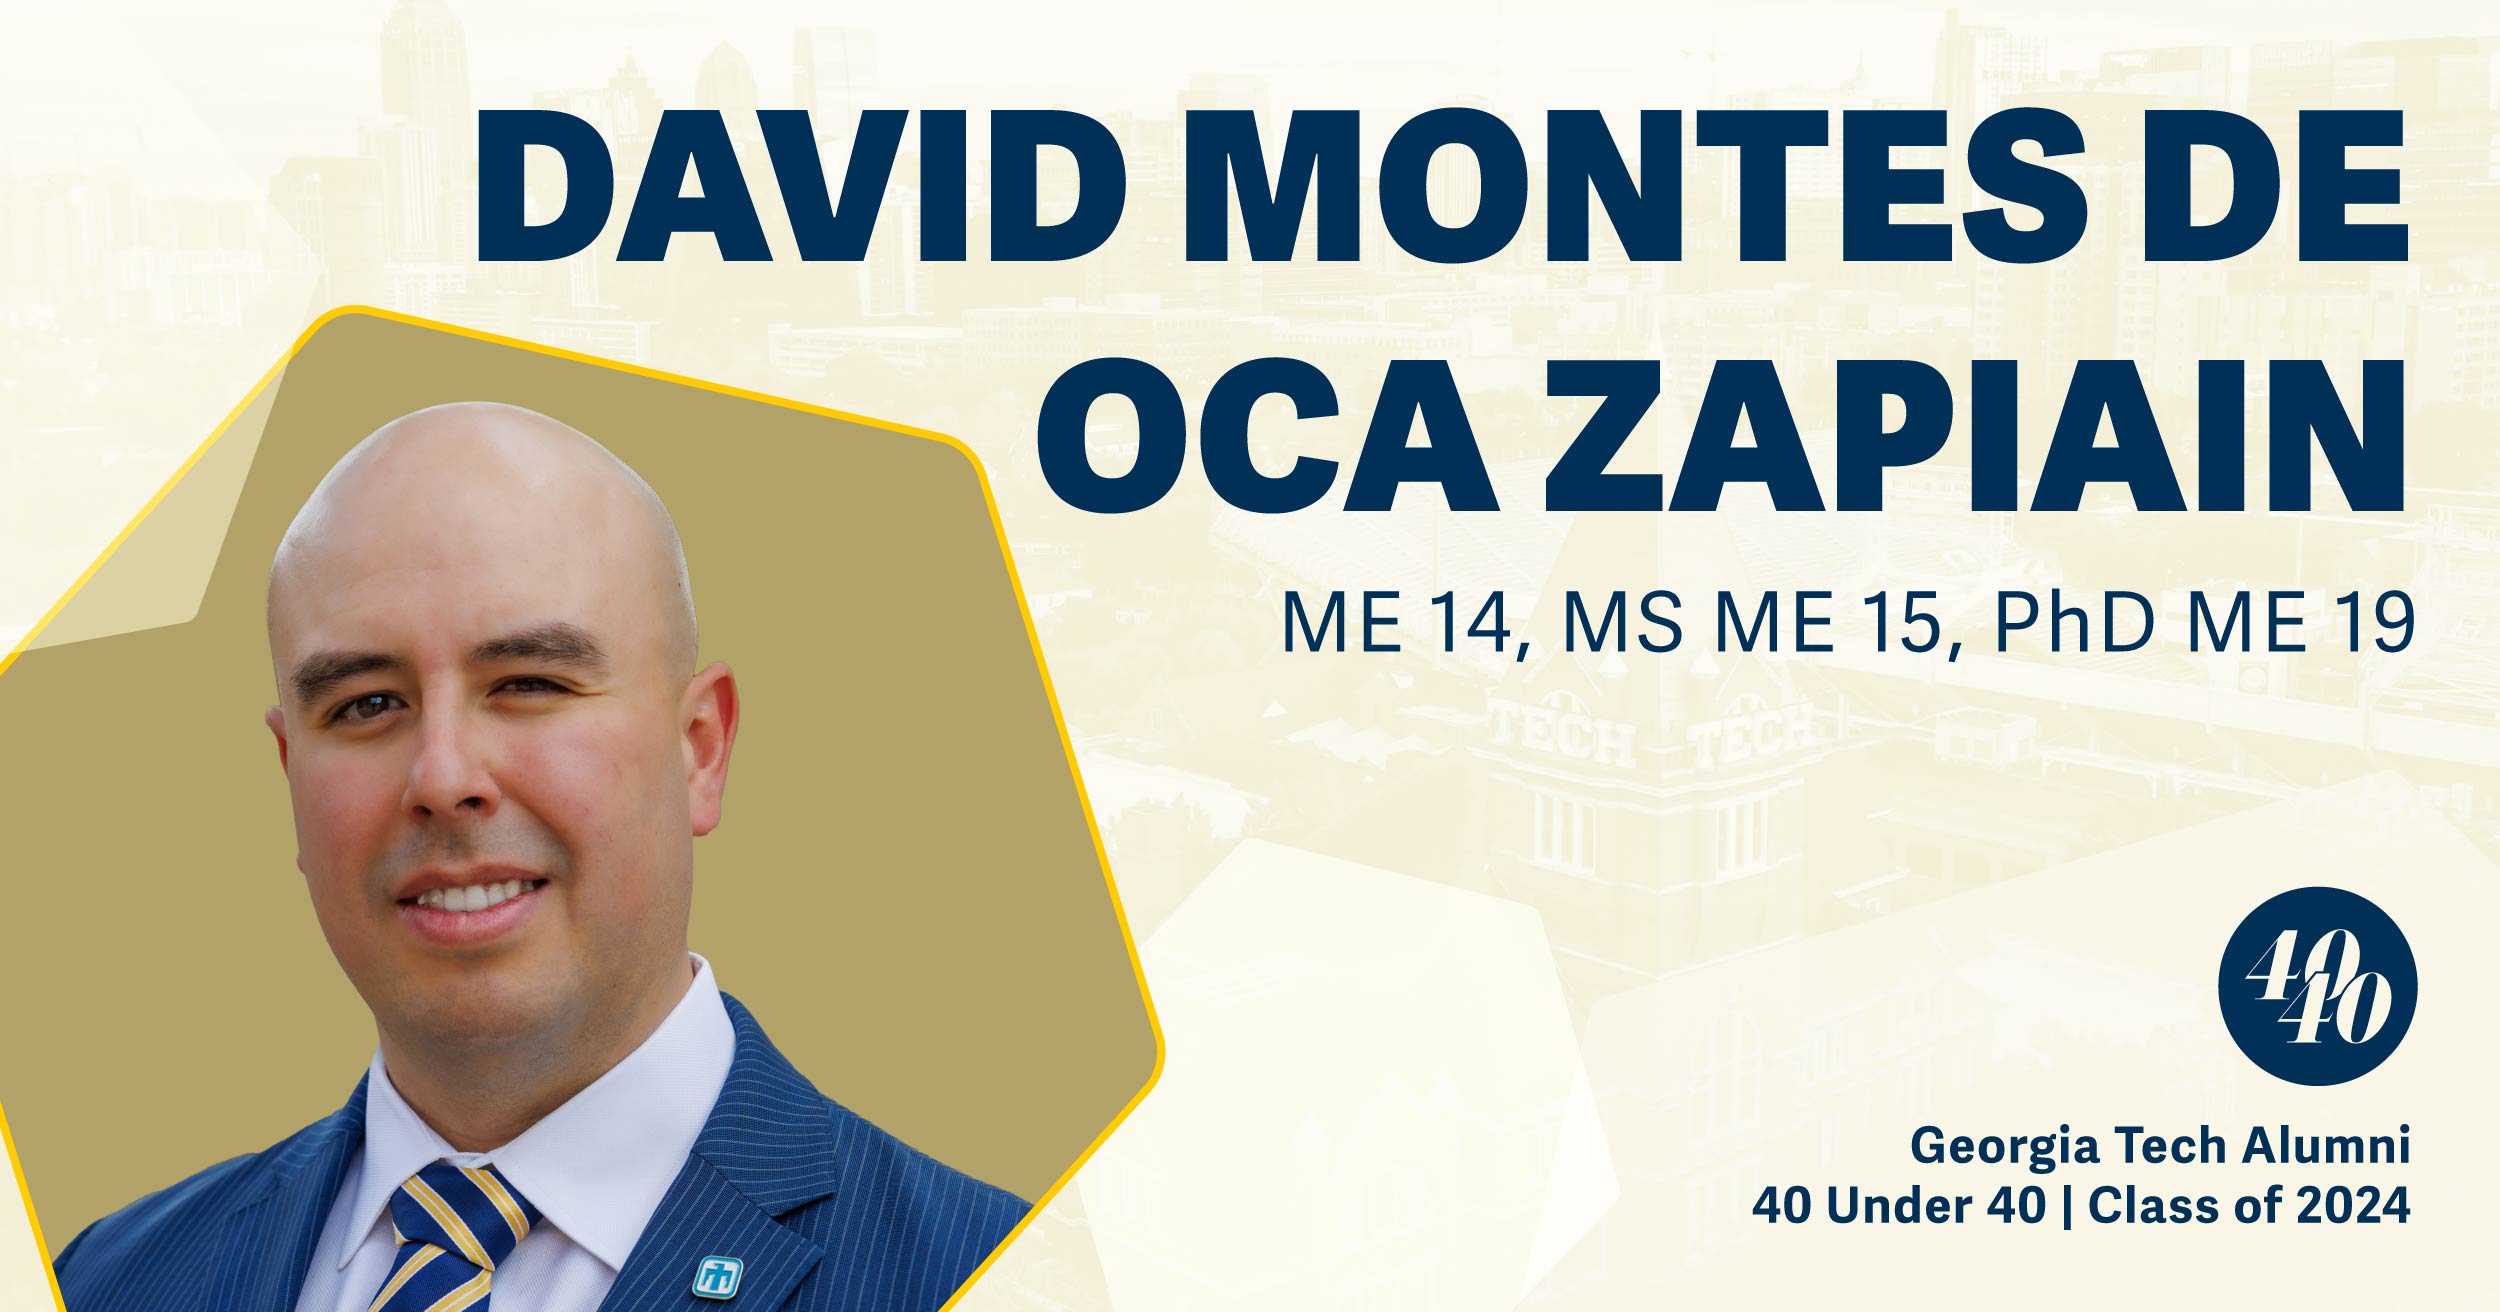 •	David Montes de Oca Zapiain, B.S. ME 2014, M.S. ME 2015, Ph.D. ME 2019